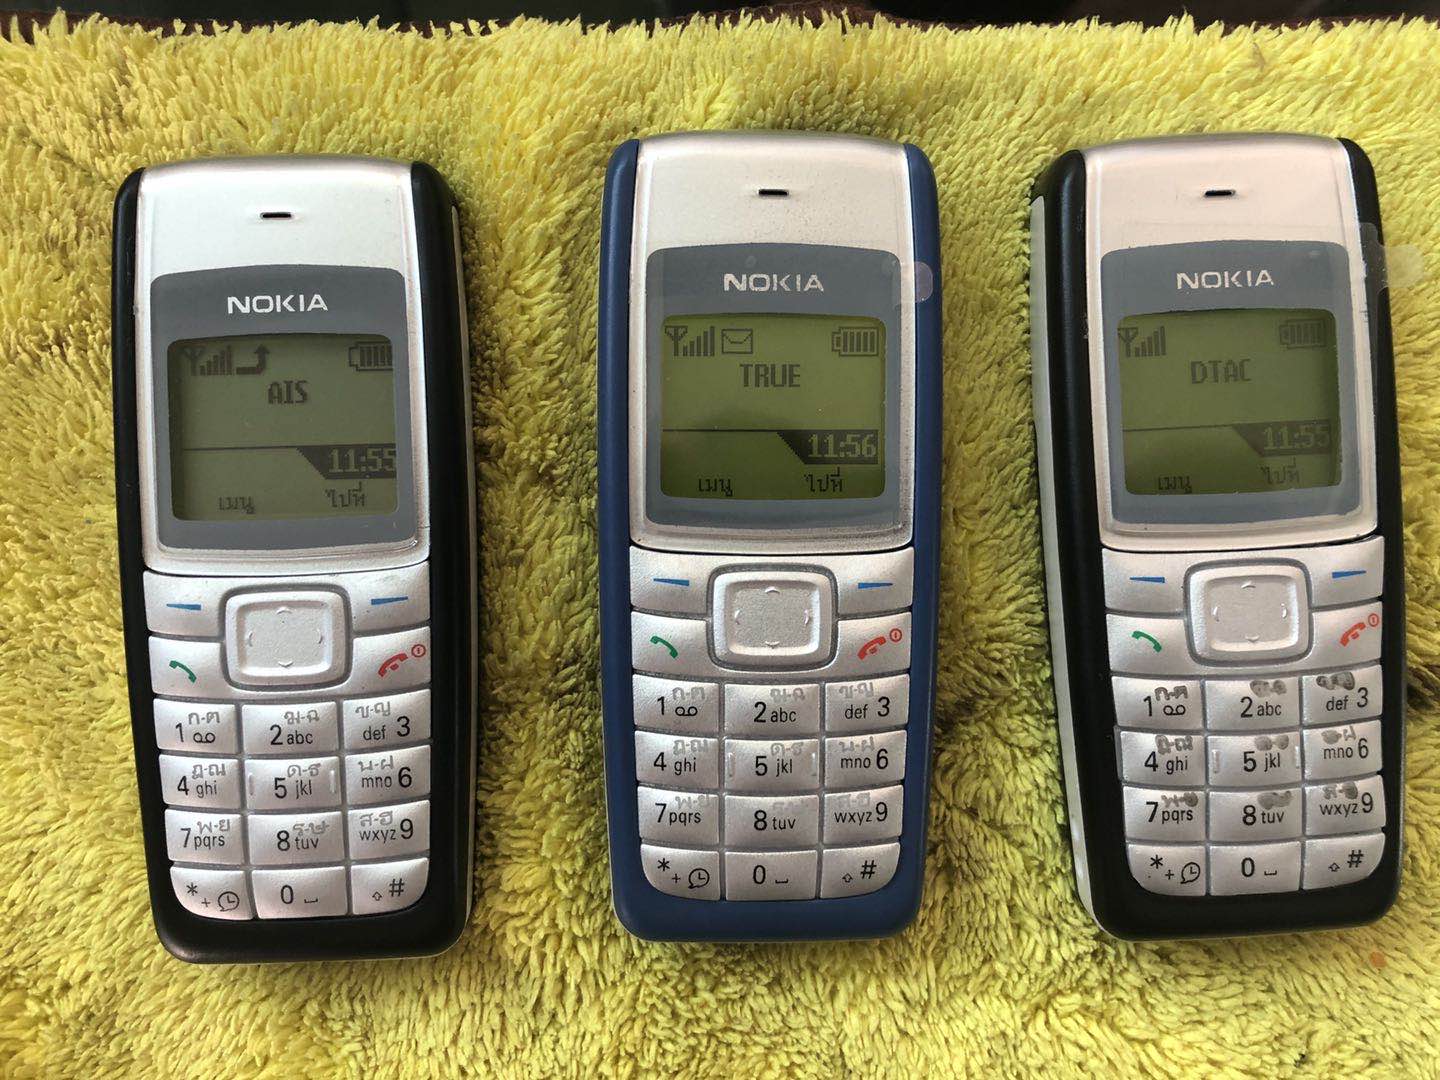 ภาพที่ให้รายละเอียดเกี่ยวกับ โทรศัพท์มือถือ N 1110i ปุ่มกดมือถือ ตัวเลขใหญ่ สัญญาณดีมาก ลำโพงเสียงดัง ใส่ได้AIS  TRUE ซิม4G